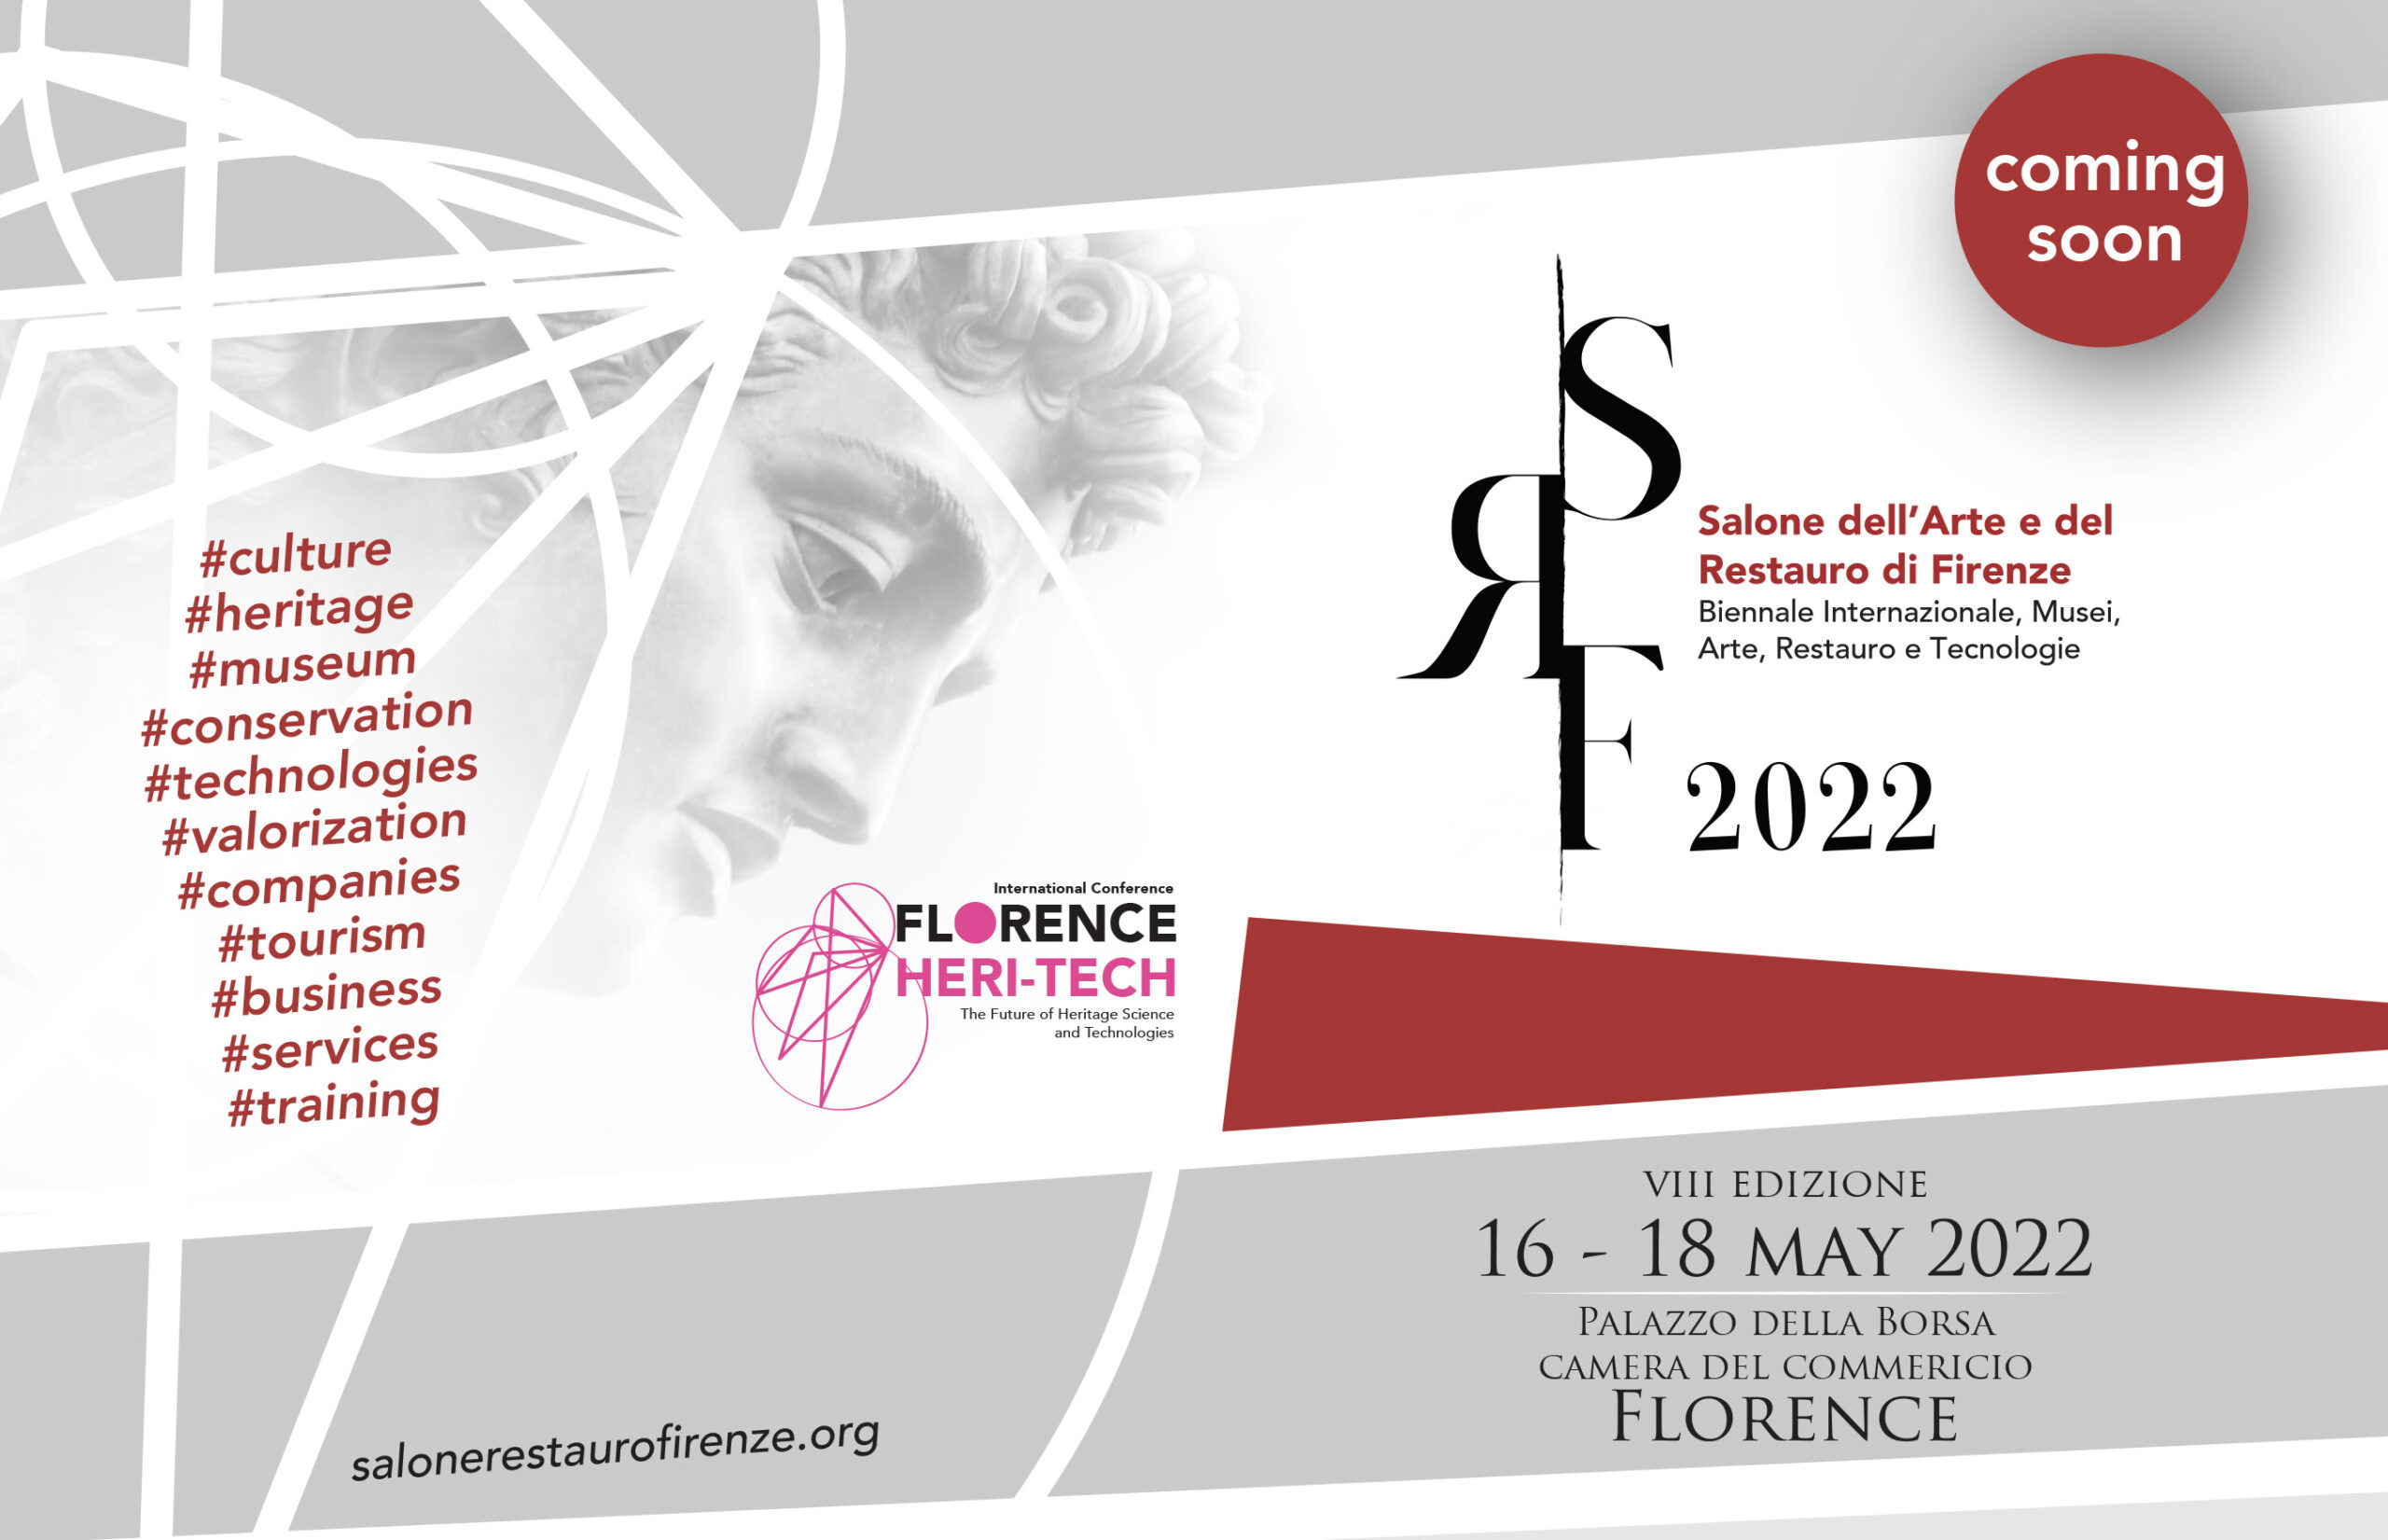 Salone dell'Arte e del Restauro di Firenze 2022